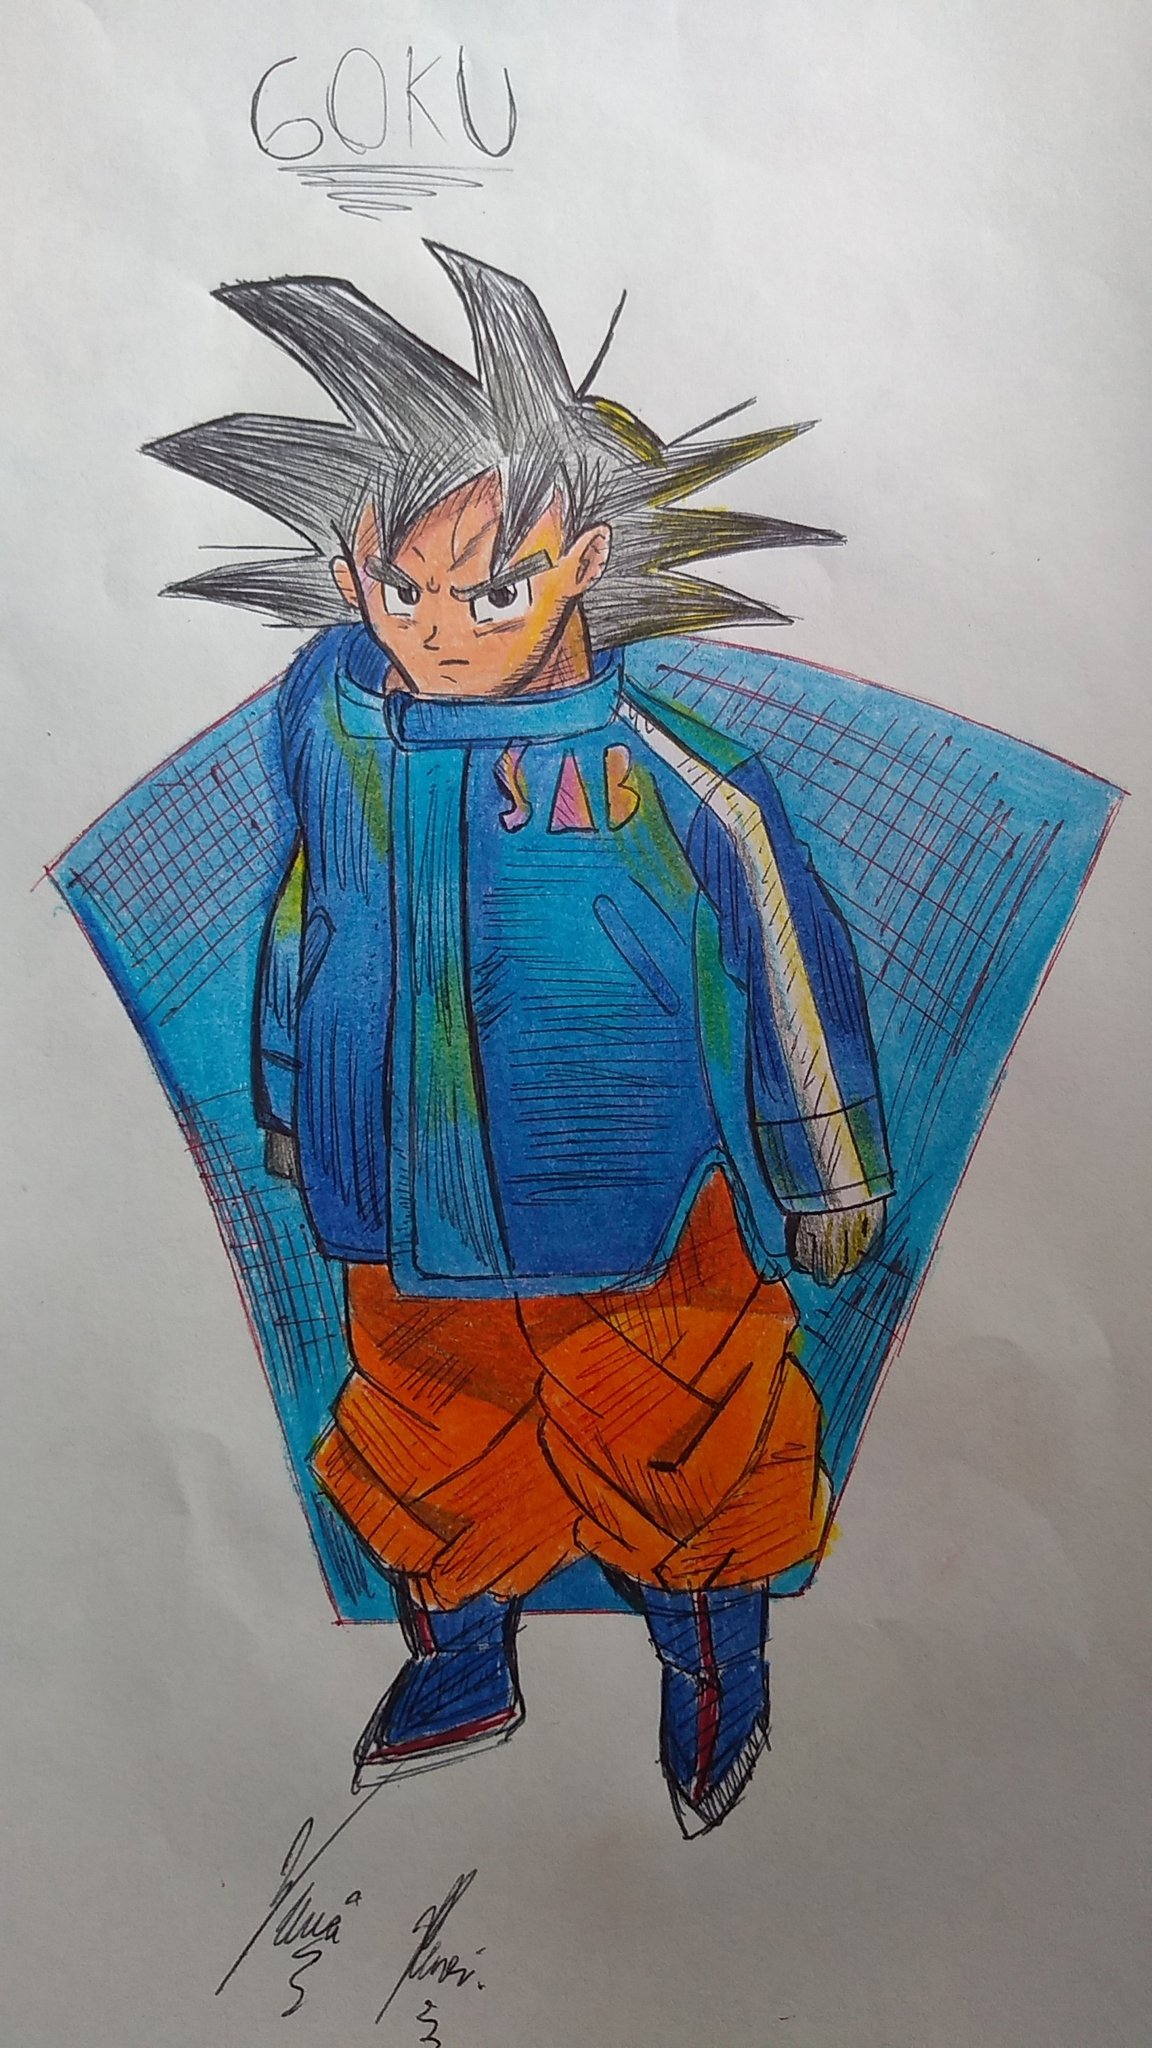 Desenhando um pouco Goku ssj4 espero que gostem #drawing#art#fanart